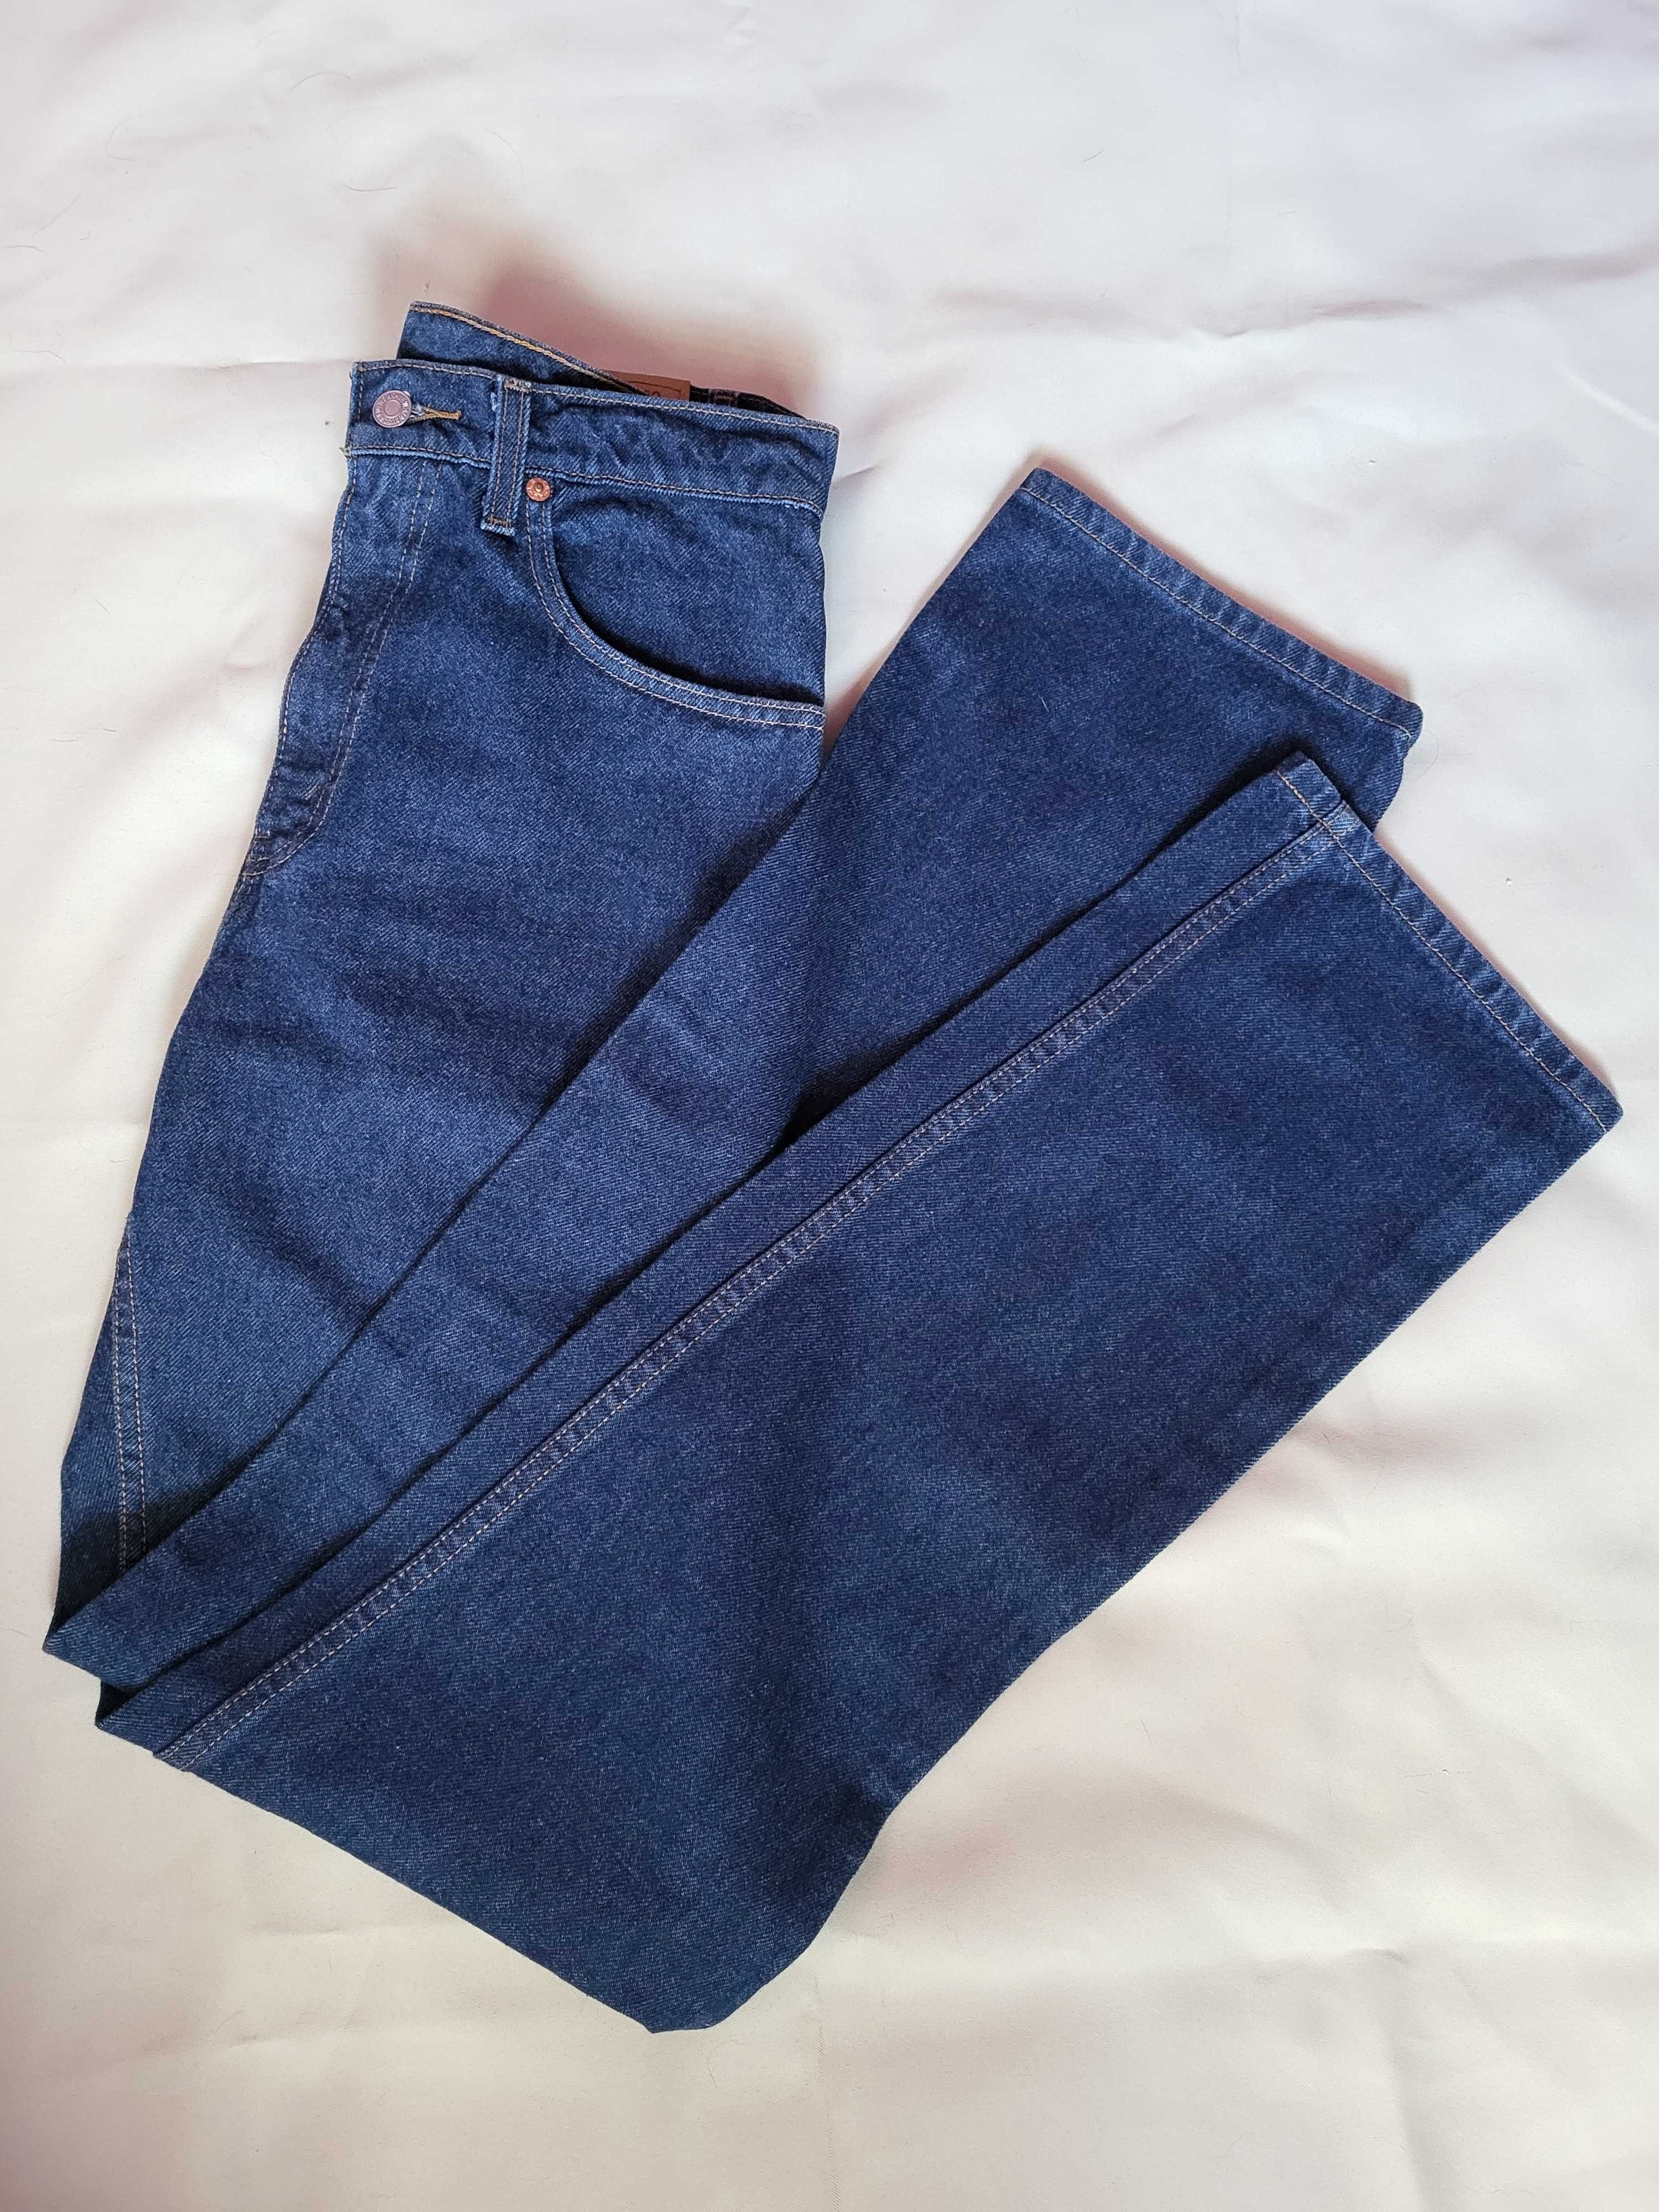 Vintage jeans Levi's 505 w31